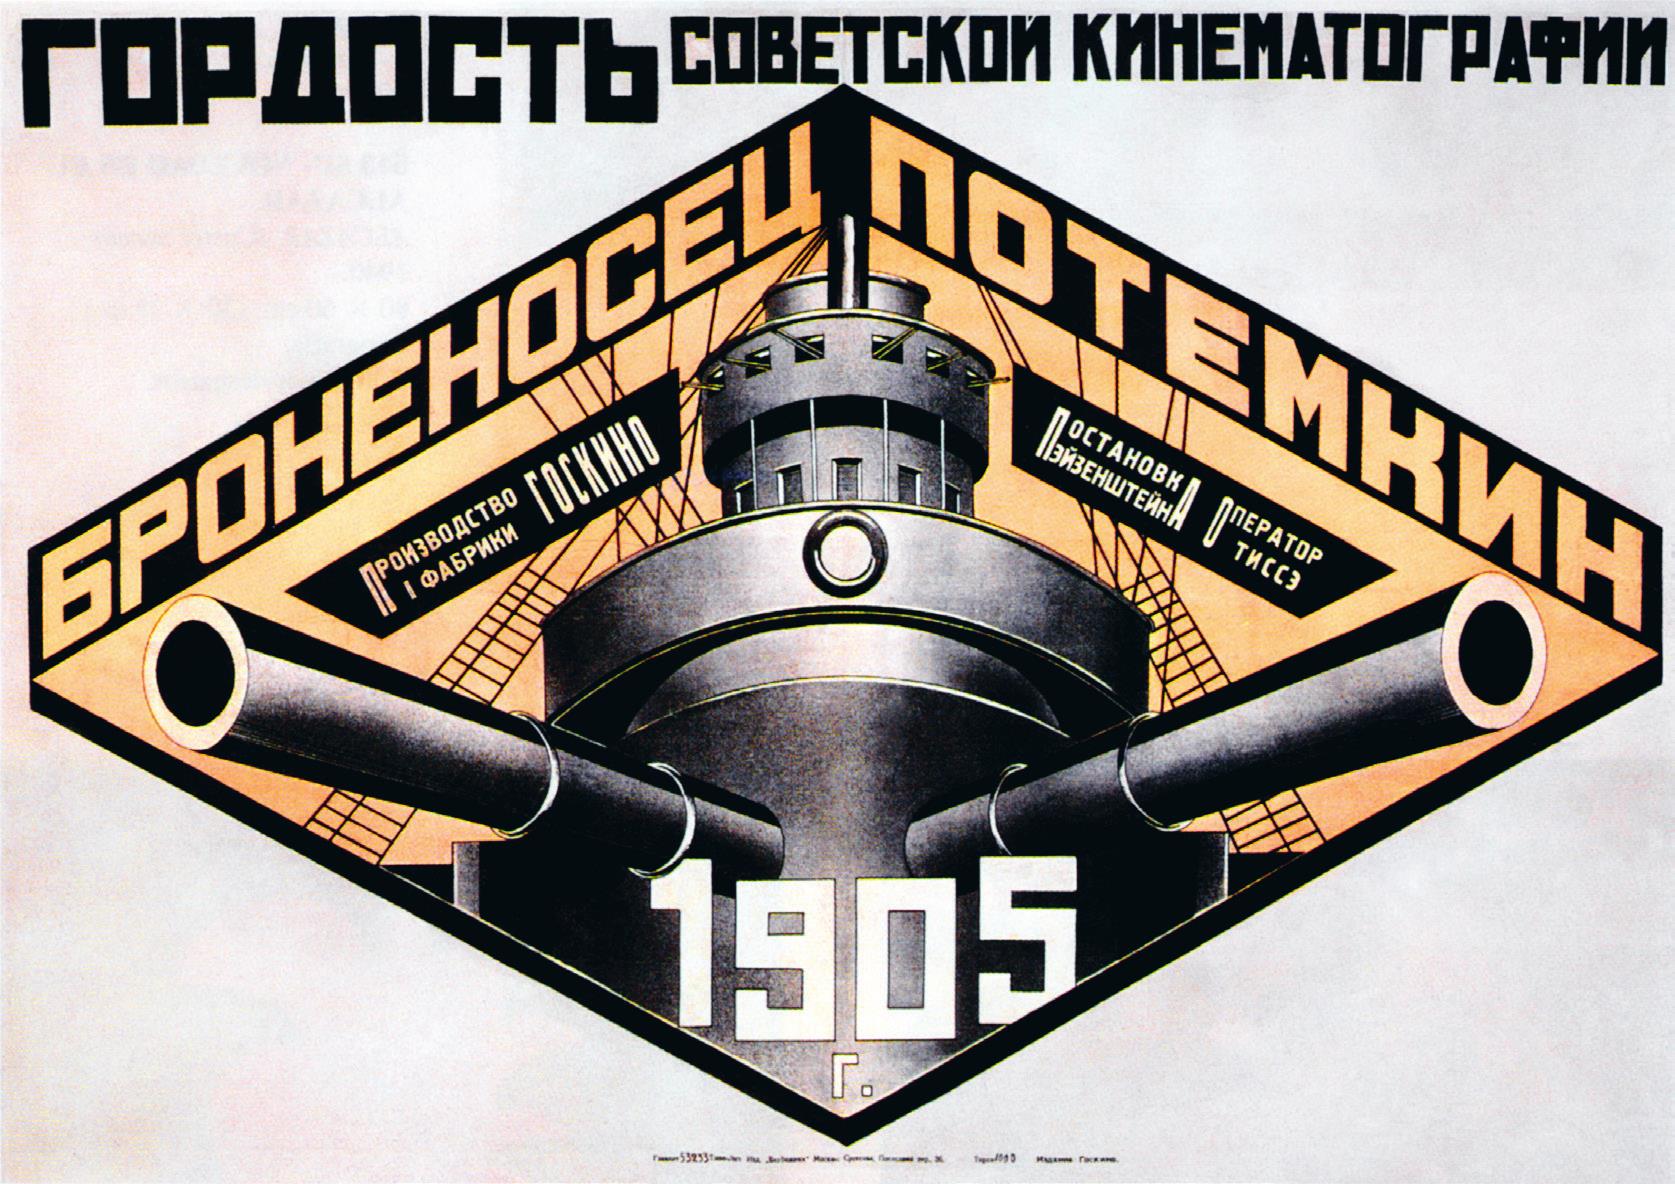 《战舰波将金号》 （1925） 亚历山大·罗德钦科的作品是苏联最著名的构成主义海报之一。图像突出了俄国的海军力量，对称的使用在视觉上产生了十分震撼的效果。